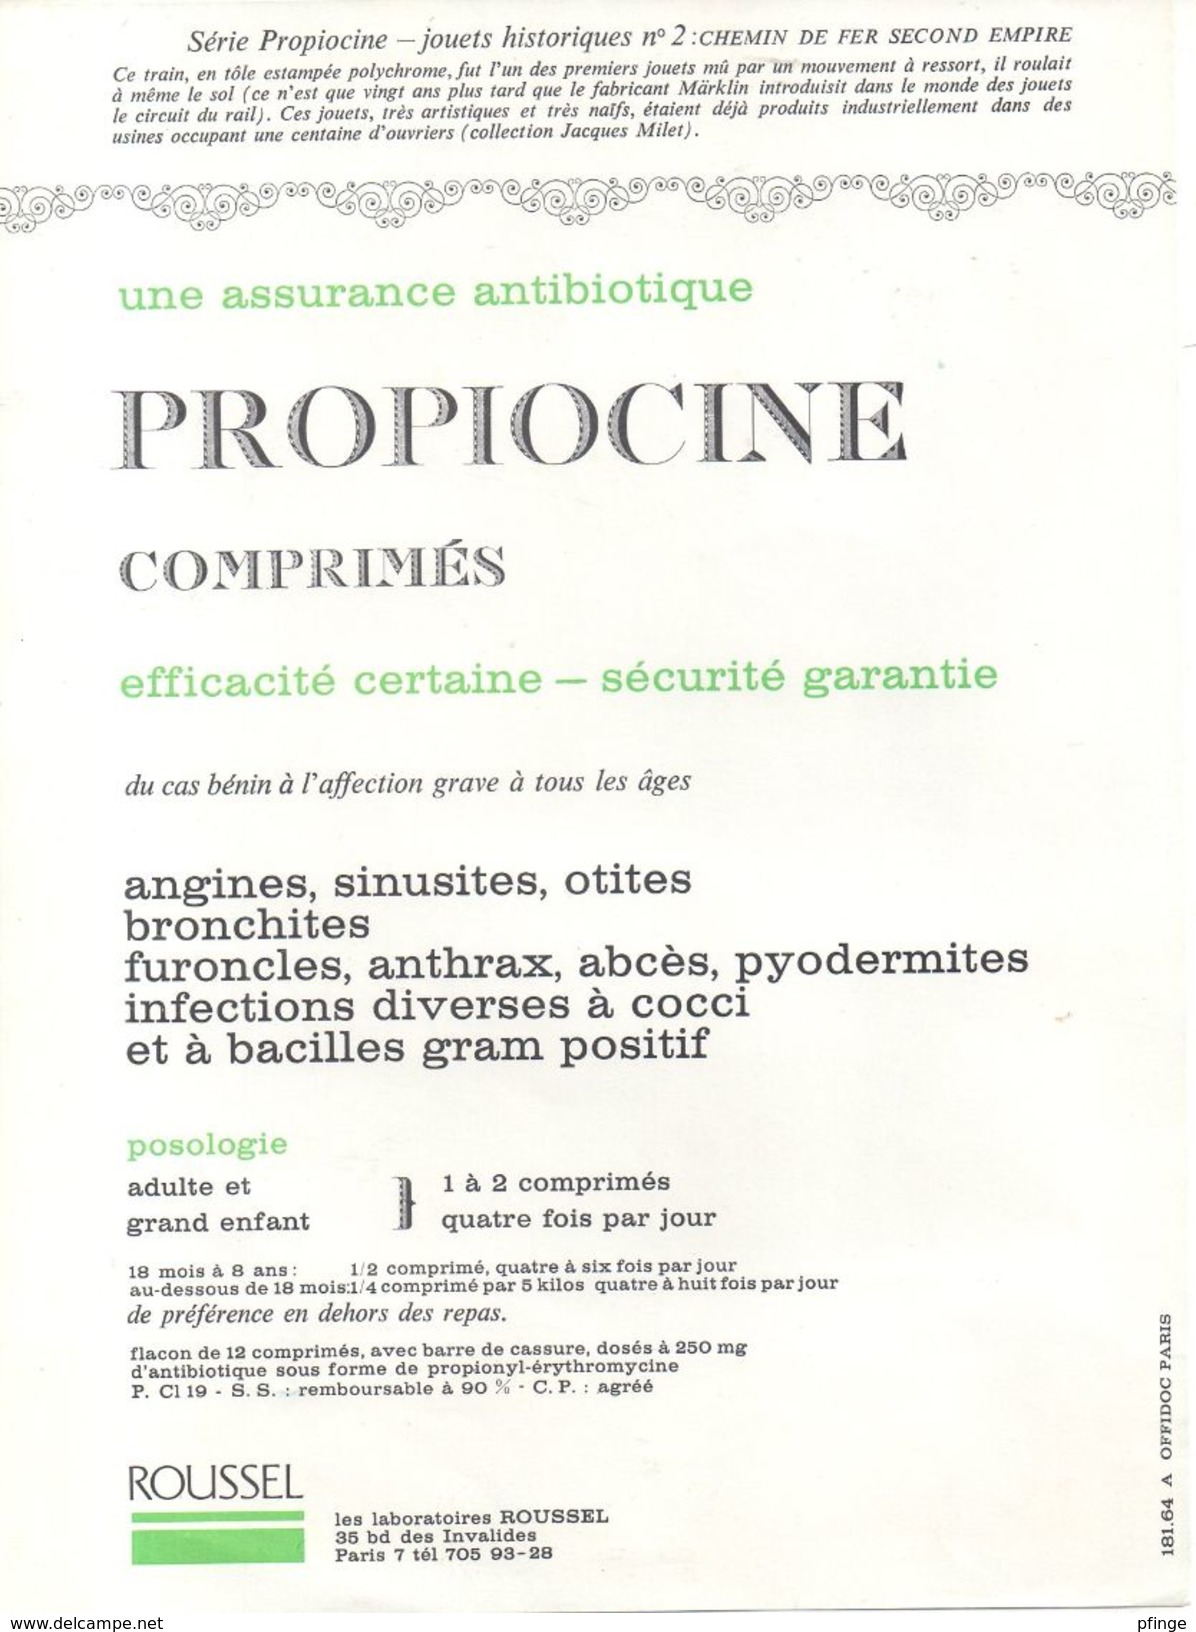 Chemin De Fer Second Empire - Publicité Médicale Roussel - Propiocine ( Jouets Historiques N°2 ) - Giocattoli Antichi